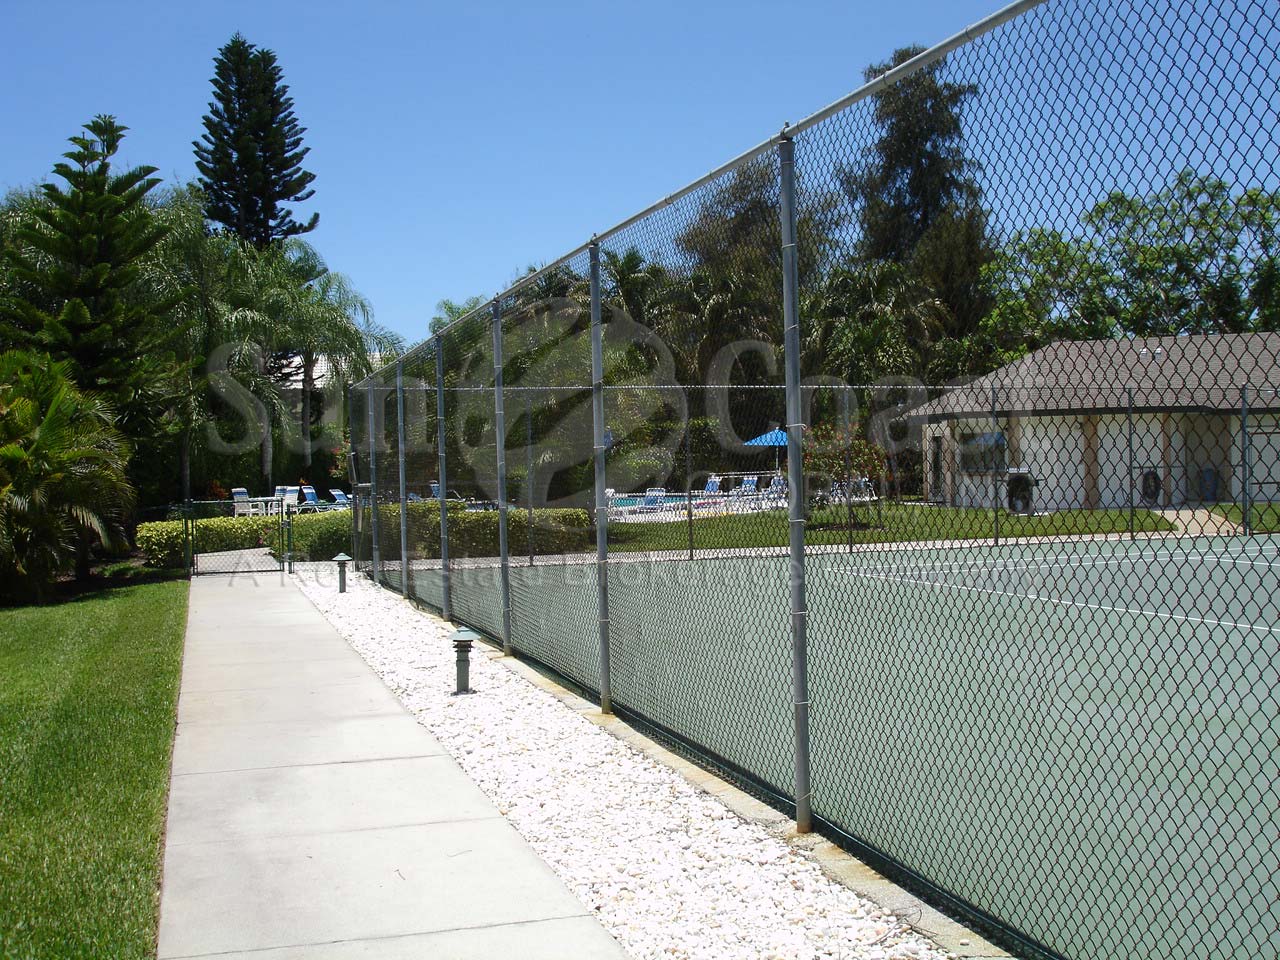 Weybridge pool and tennis courts